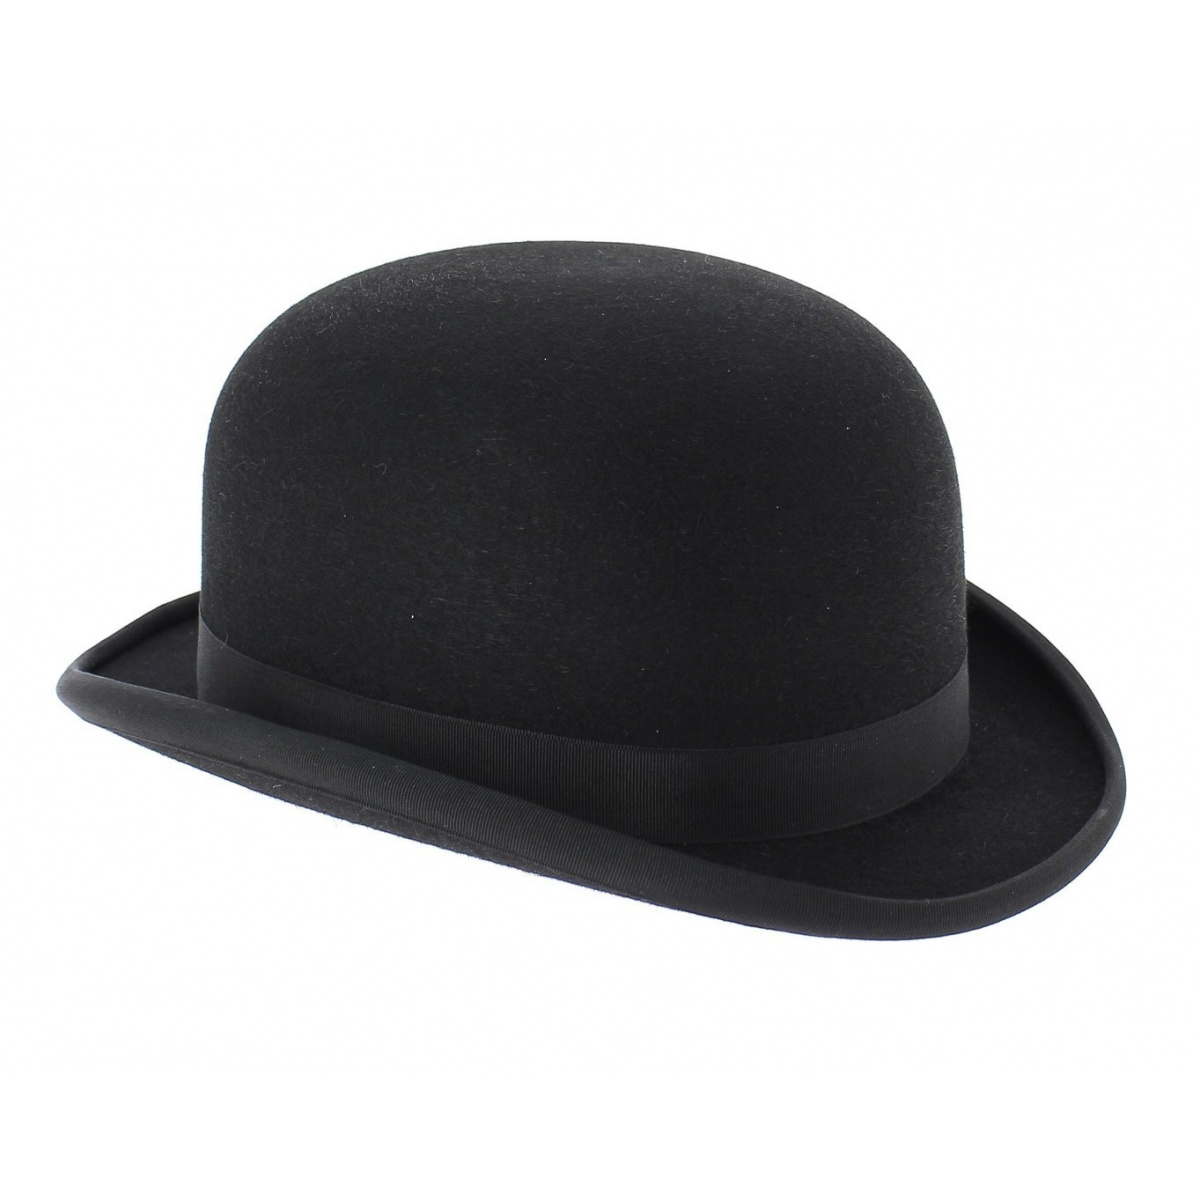 Qualité Premium Anglais Chapeau Melon 100% Laine Feutre Stingy Brim Homme Derby Hat 